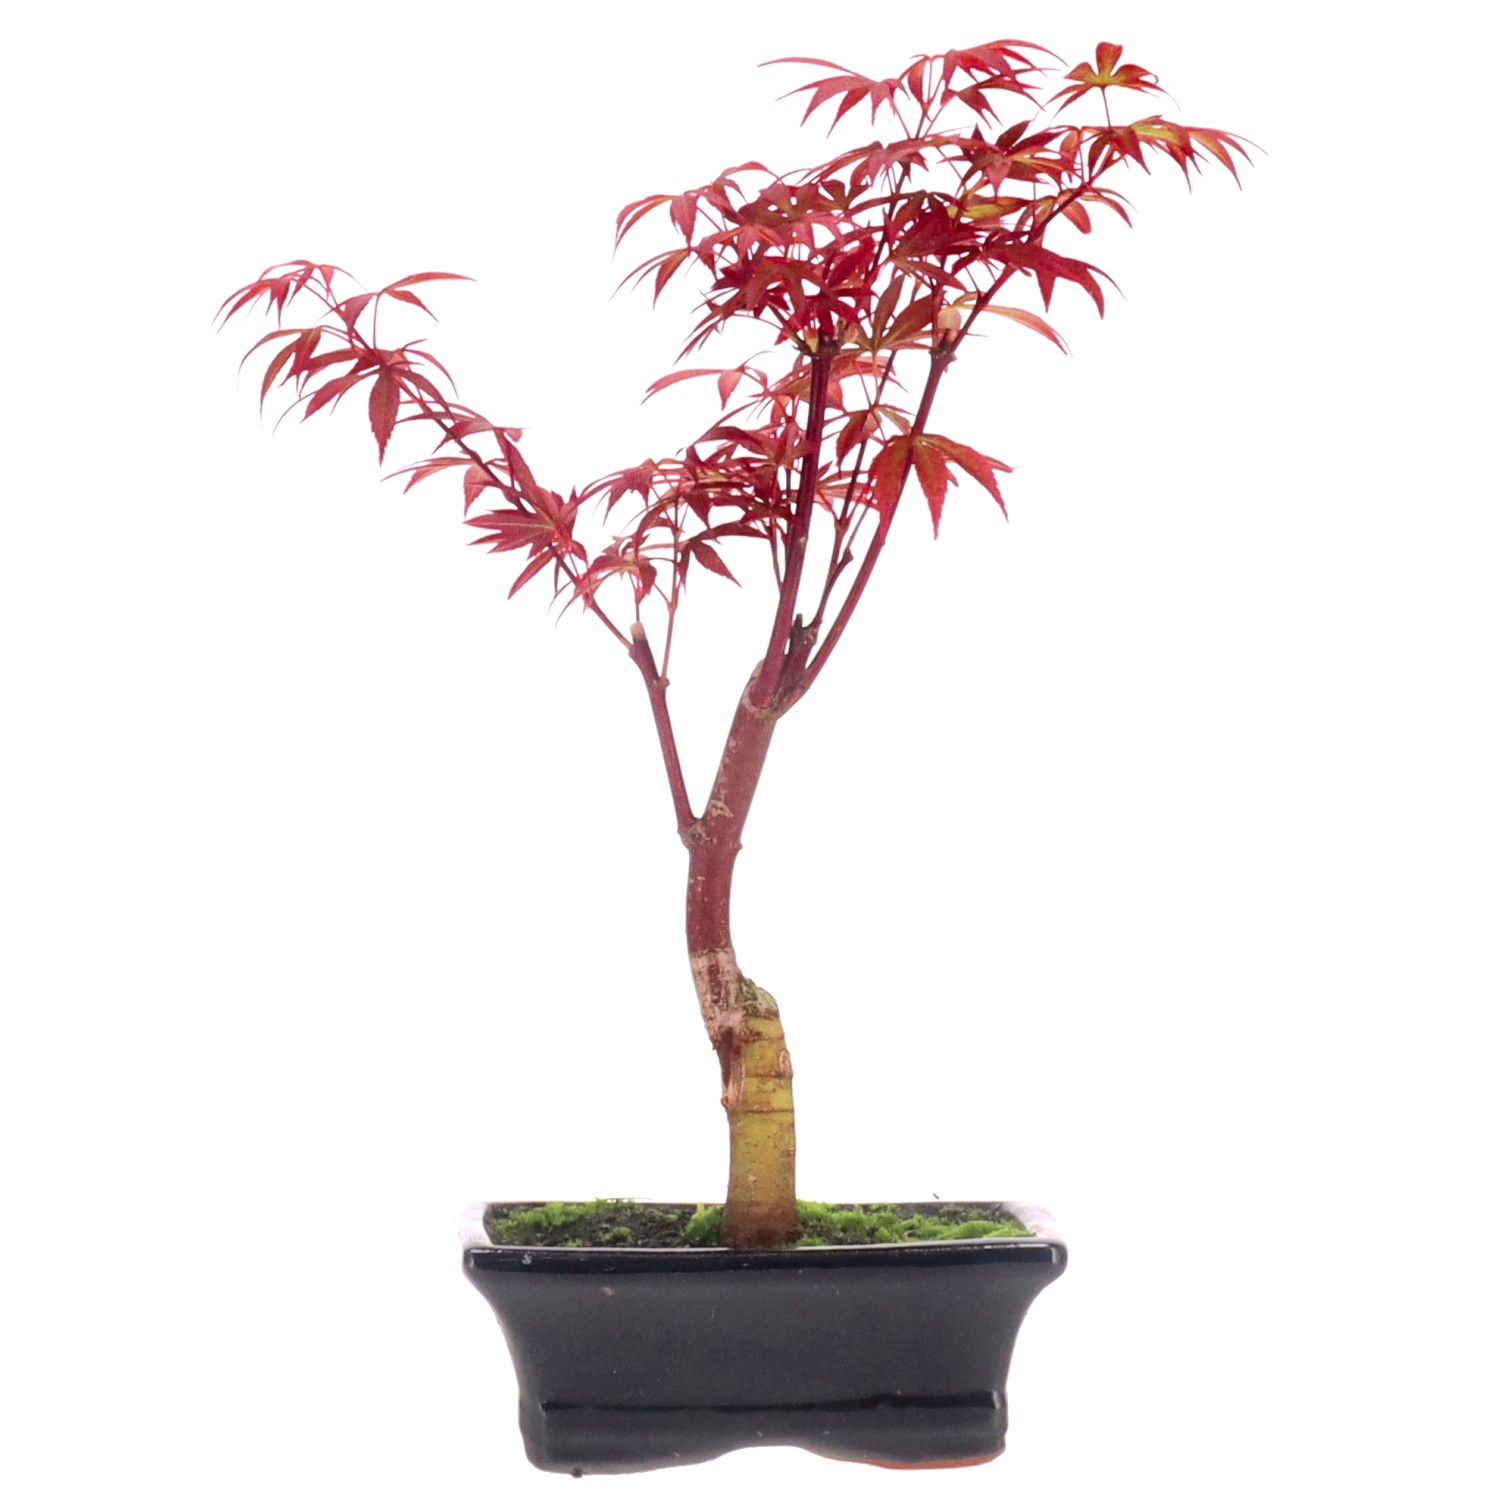 Acero rosso giapponese, ca. 7 anni (28 cm)